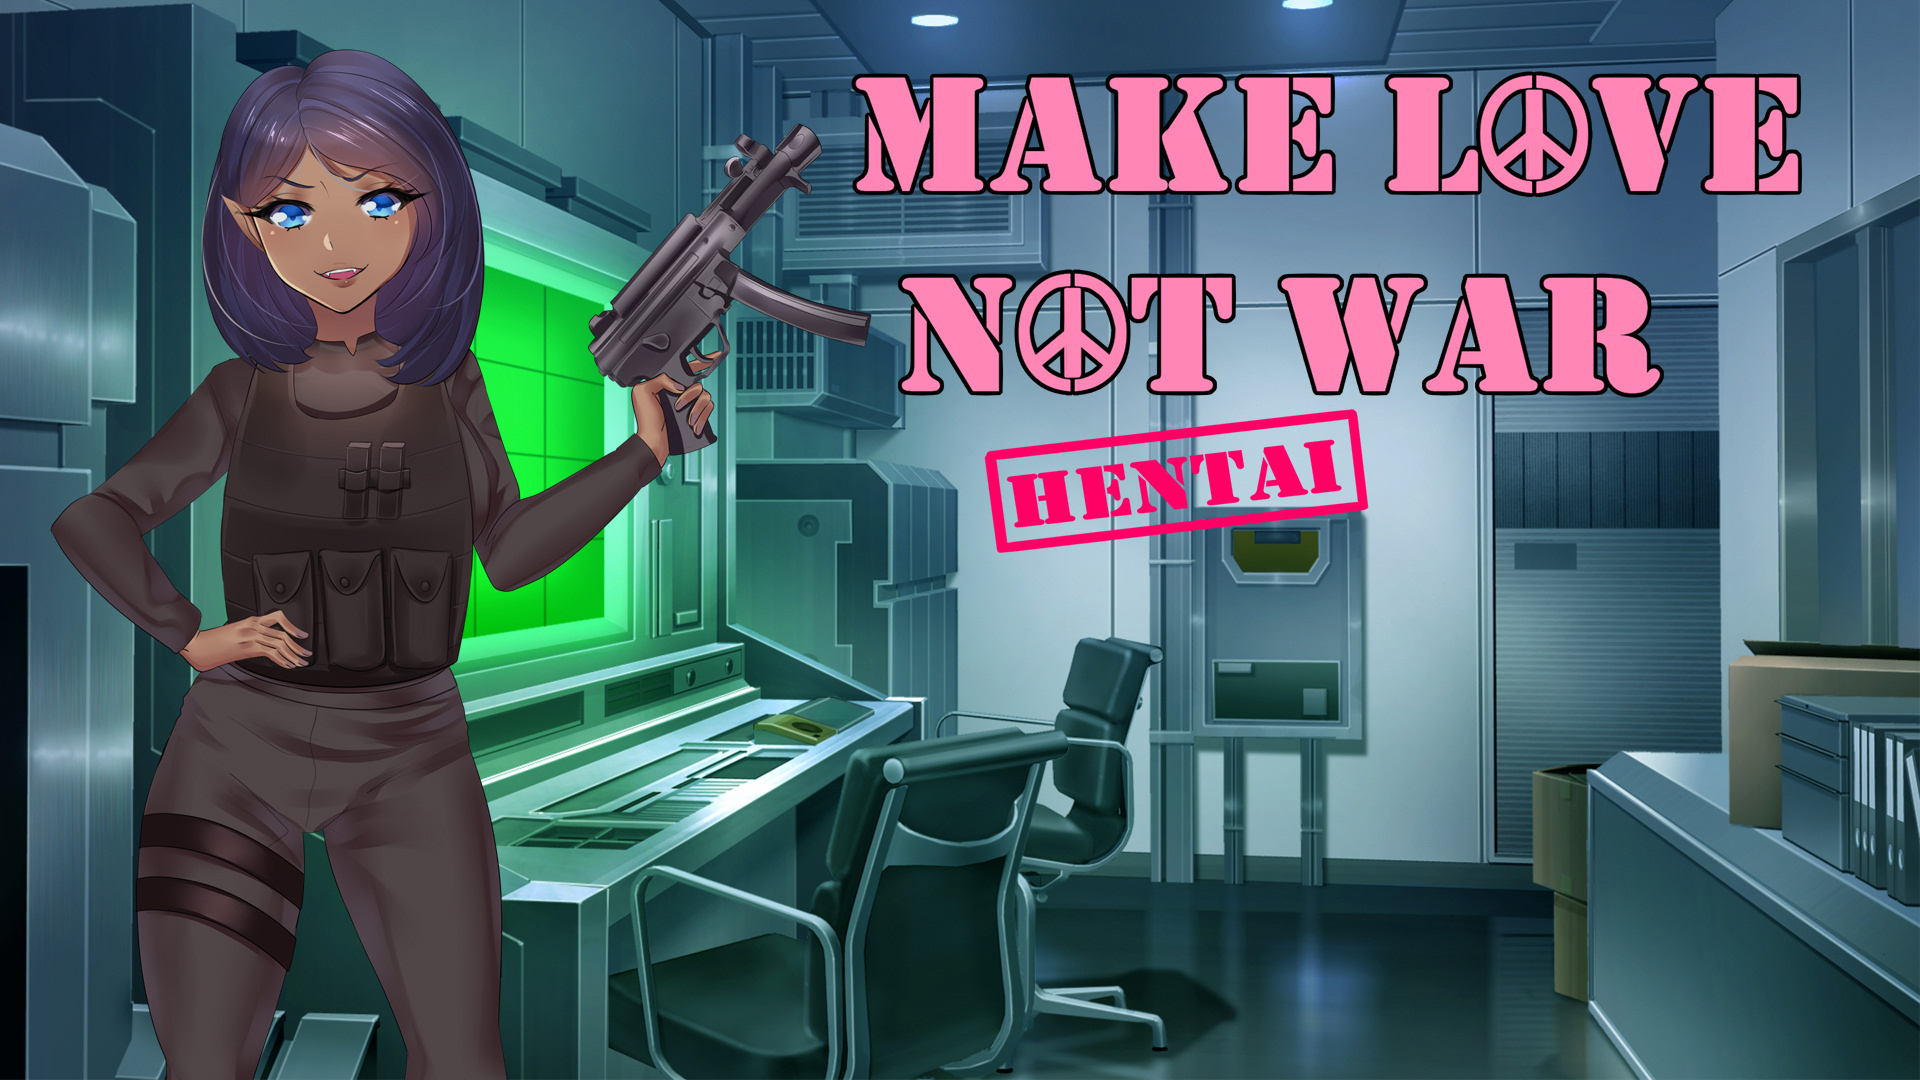 Hentai: Make love not war